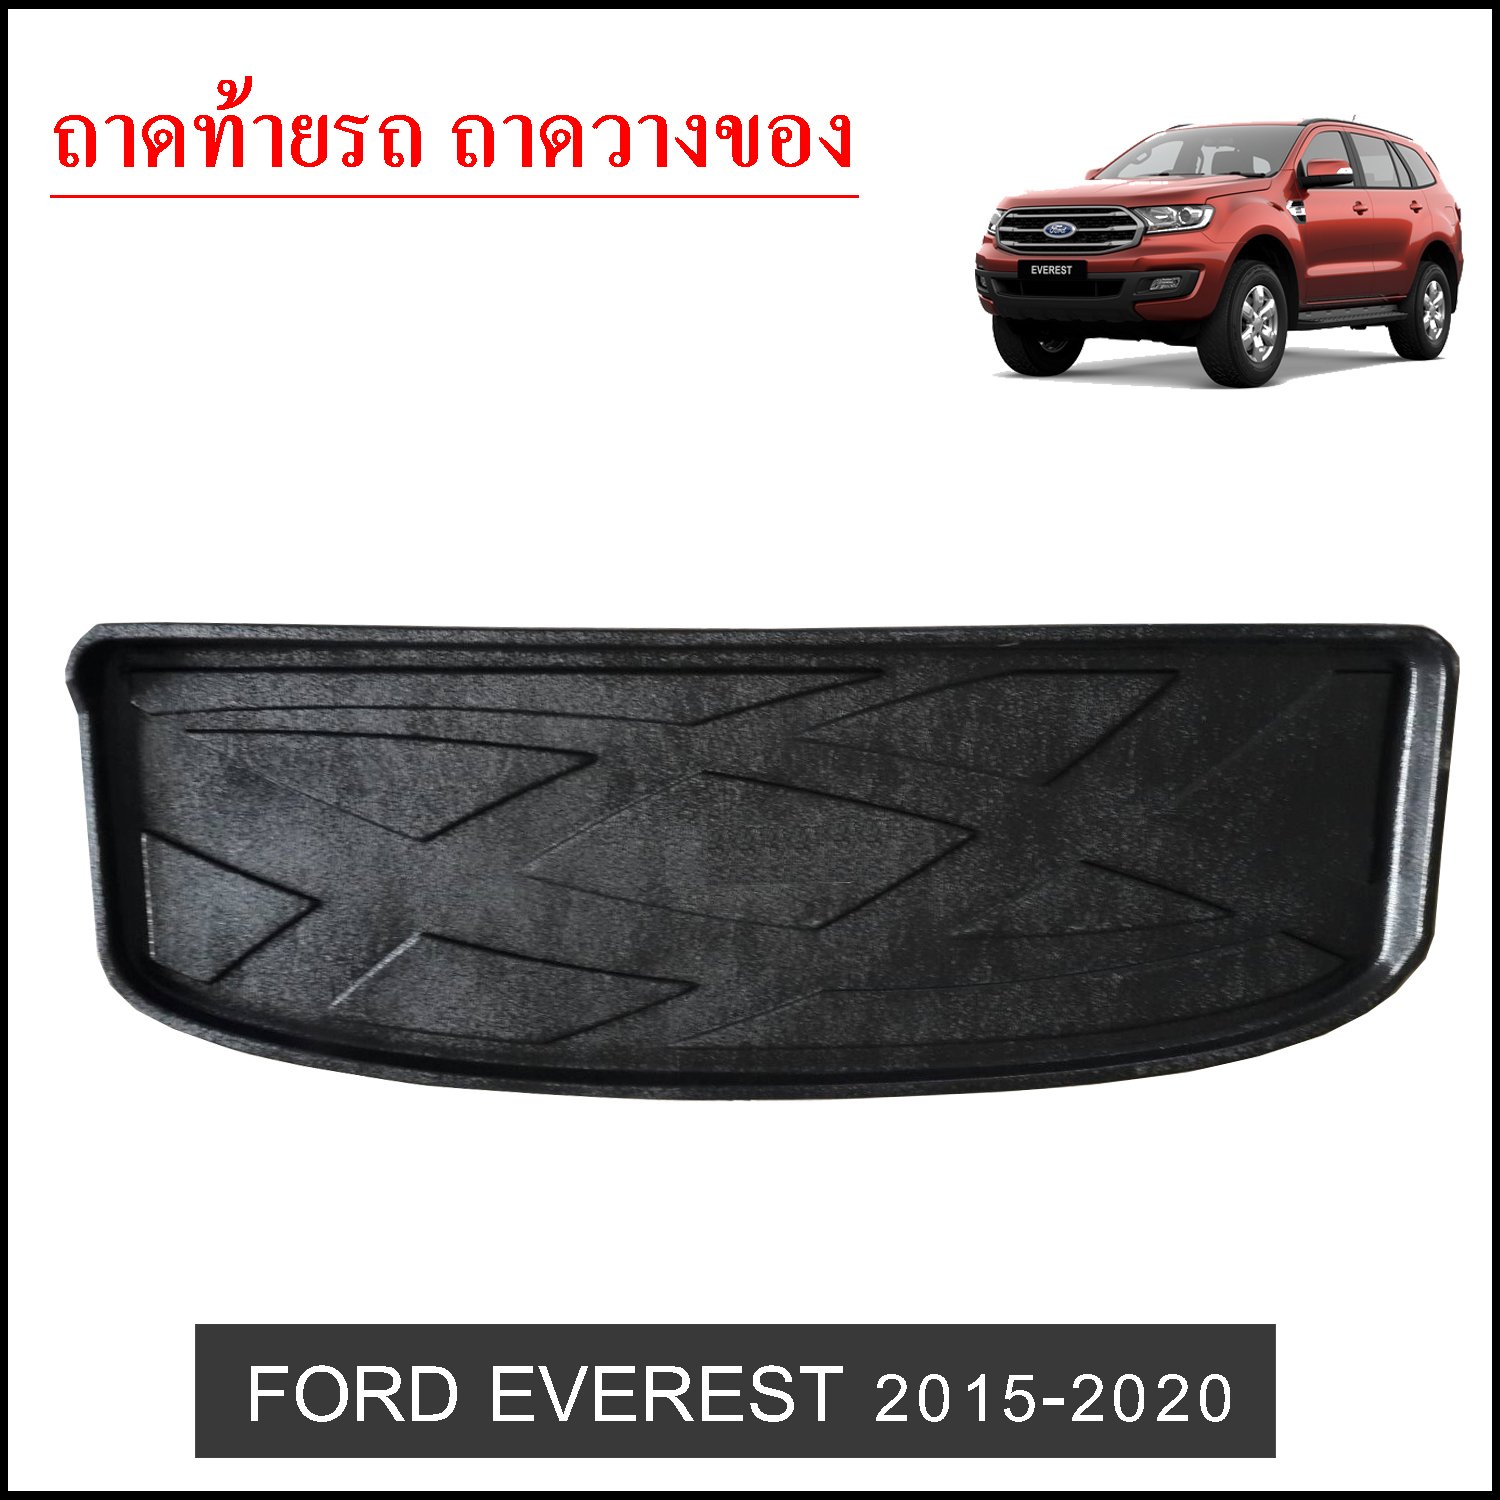 ถาดท้ายวางของ Ford Eeverest 2015-2020